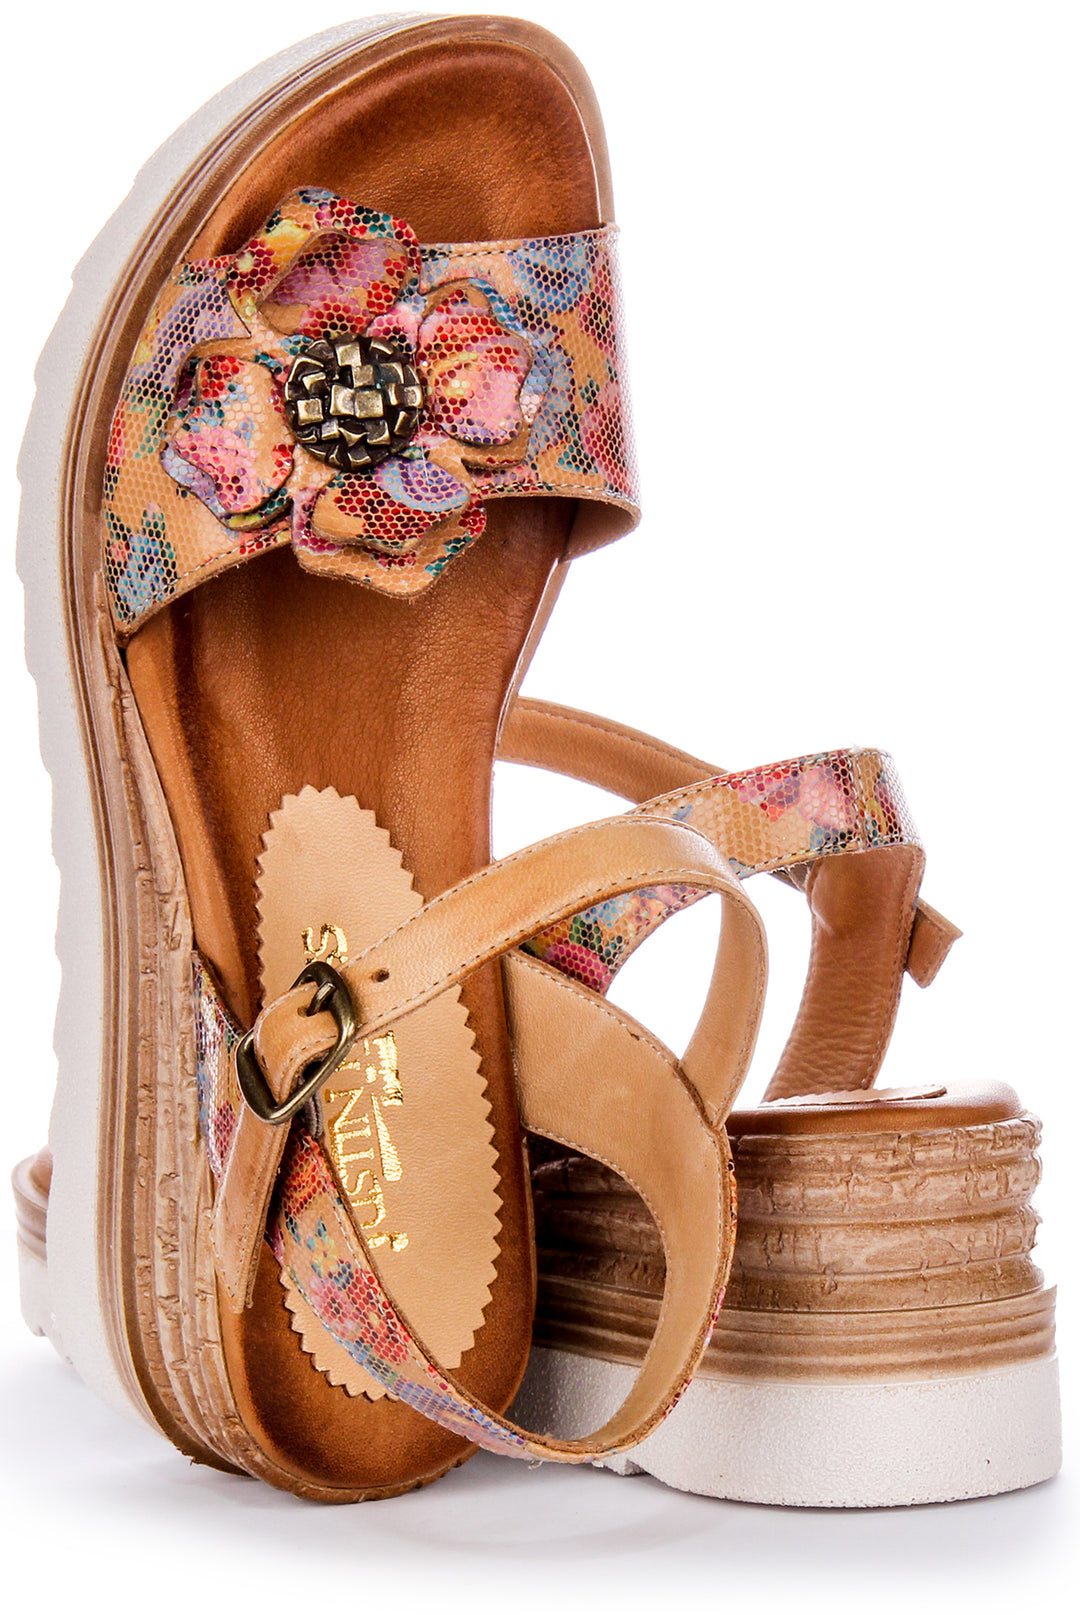 Sandales en cuir pour femmes Justinreess Tania en tan avec une petite semelle compensée à bout ouvert floral et boucle